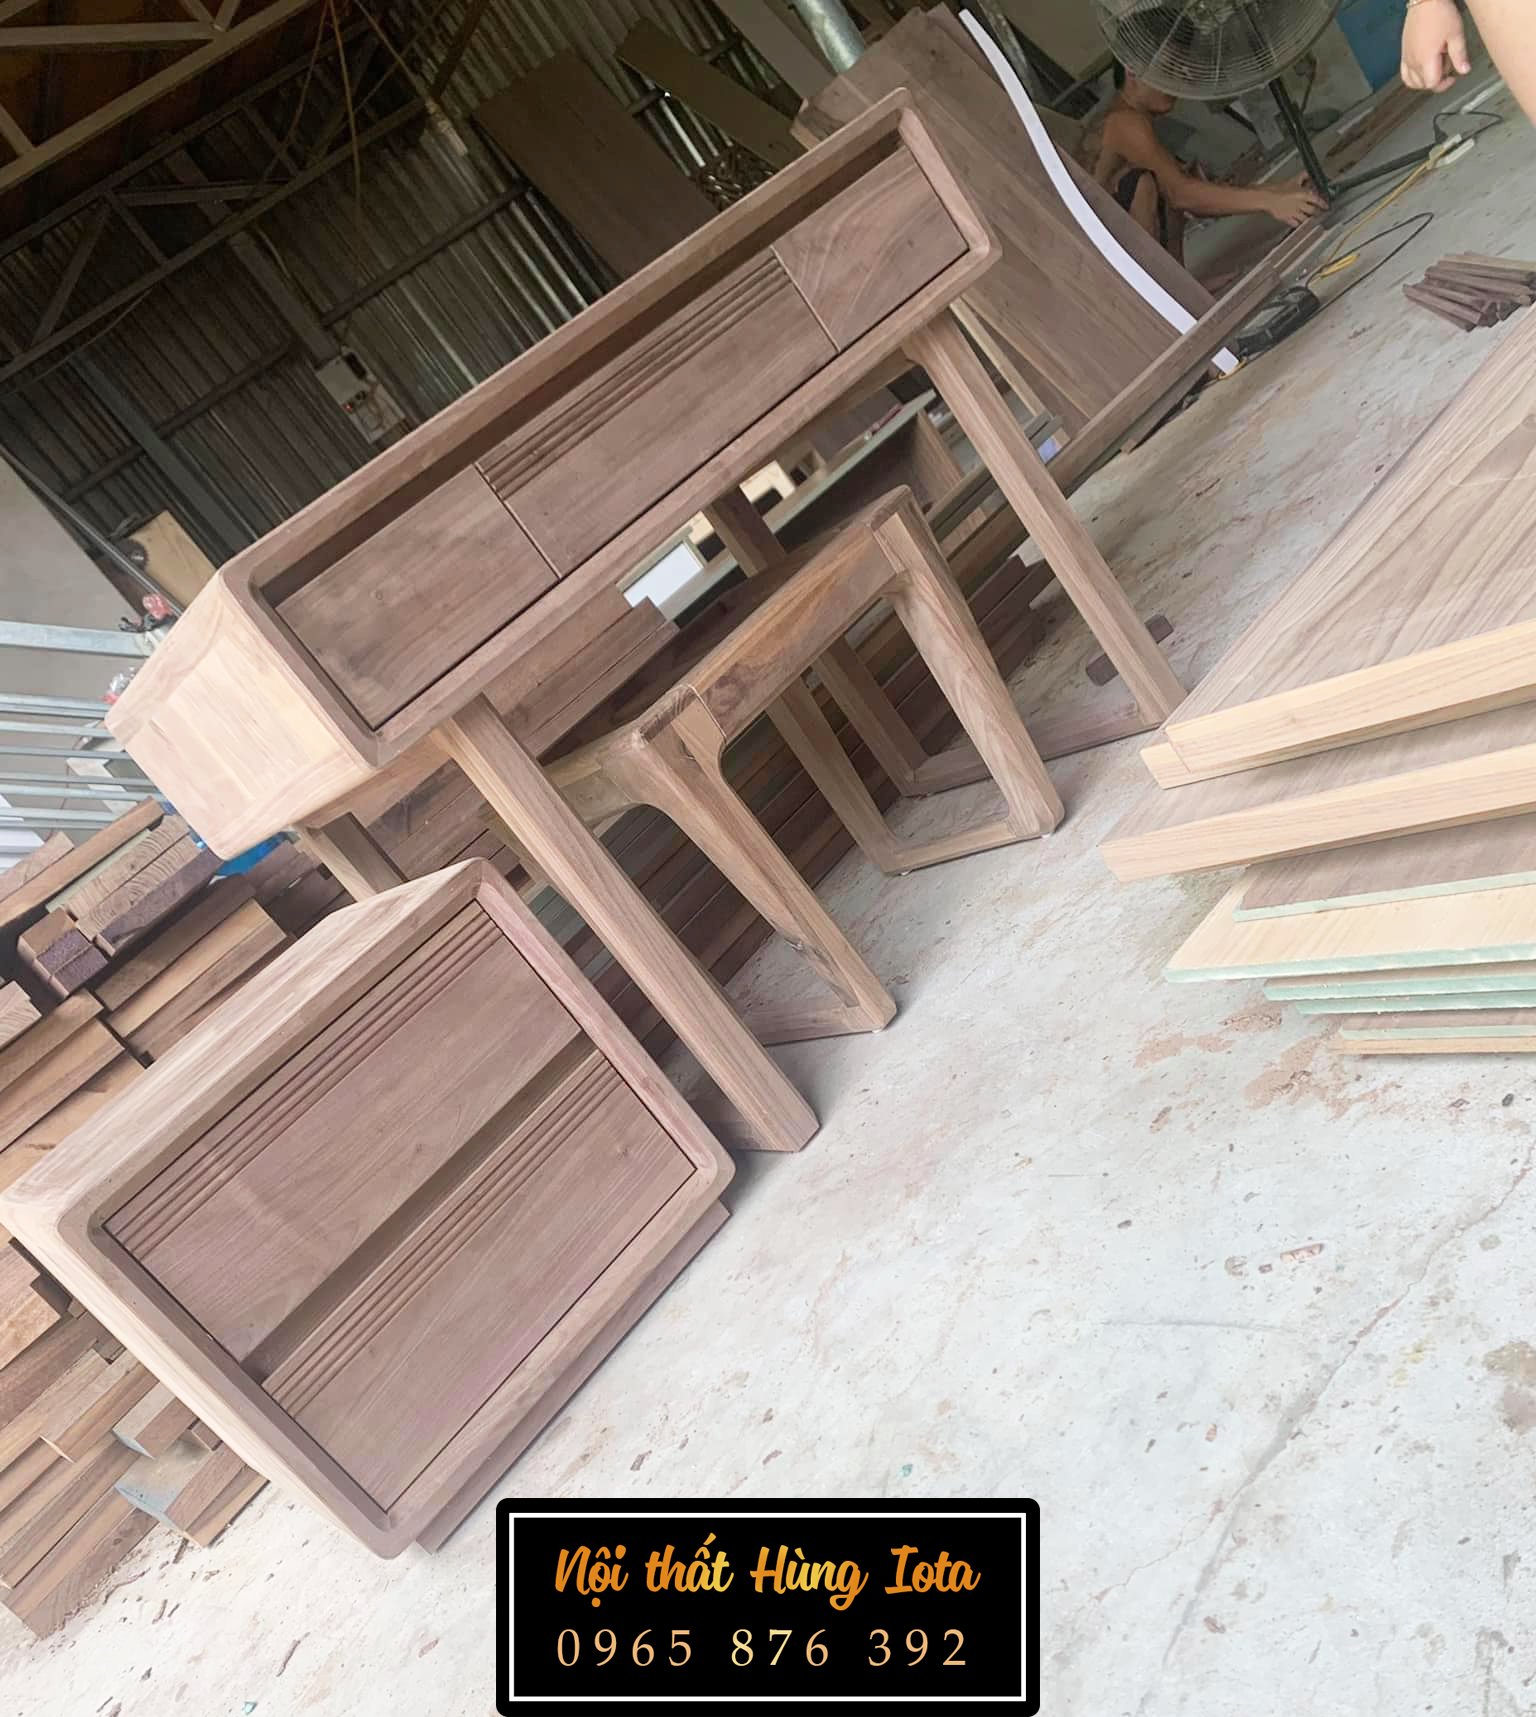 Xưởng sản xuất bàn ghế gỗ óc chó uy tín tại Hà Nội